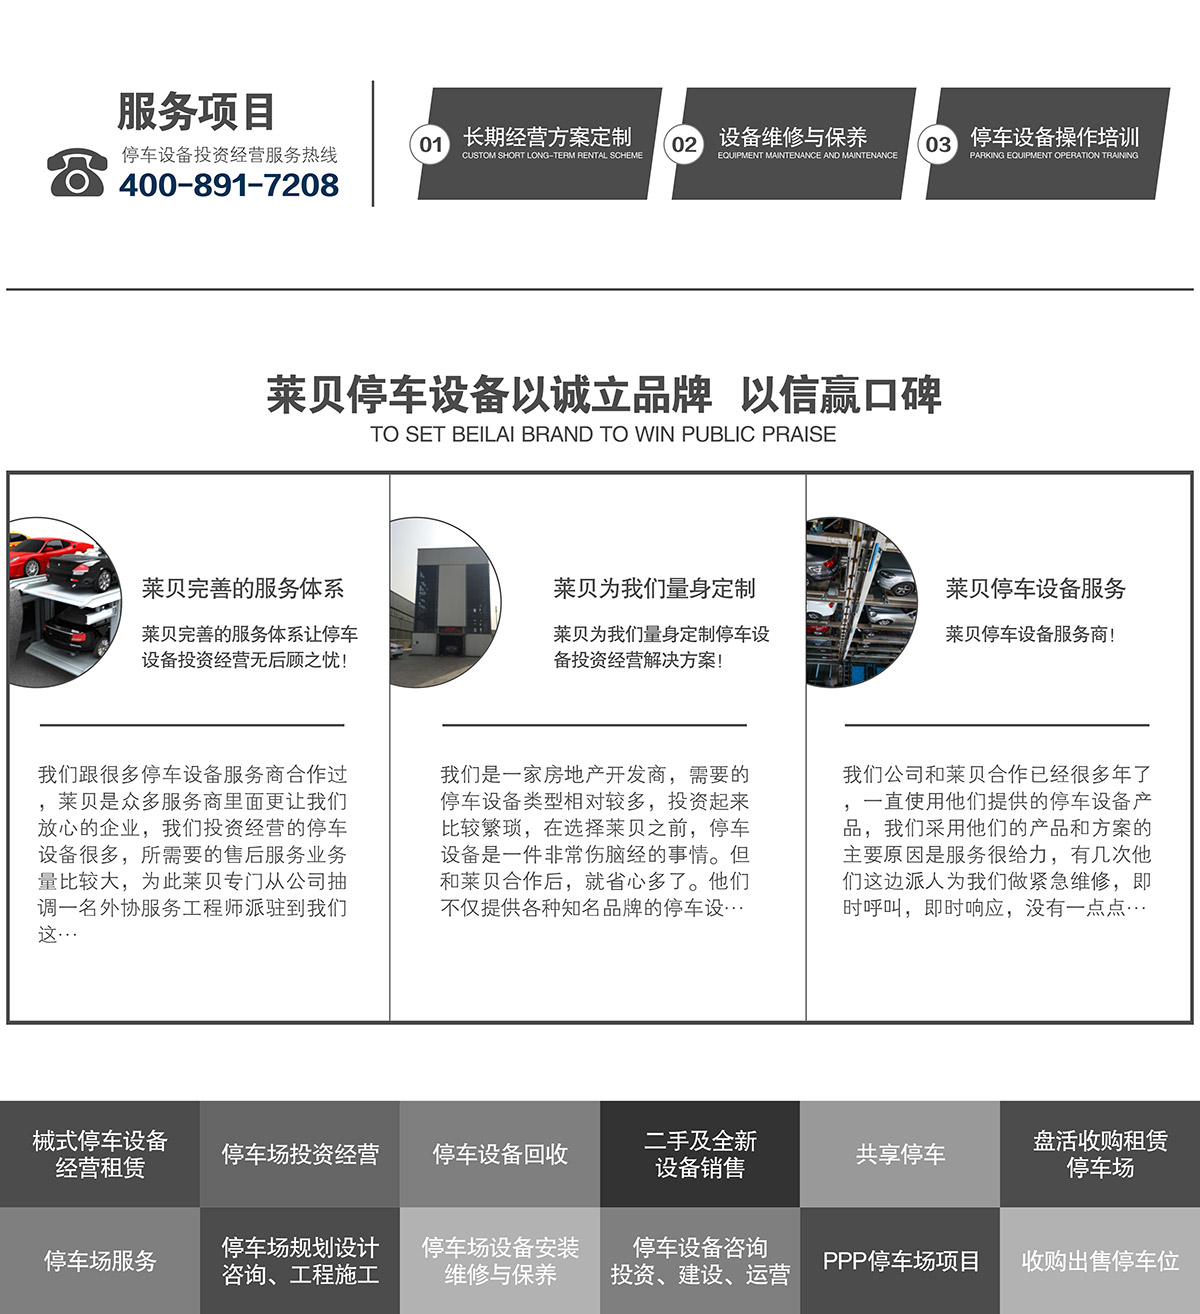 贵州莱贝机械停车位投融资建设以诚信立品牌以信赢口碑.jpg